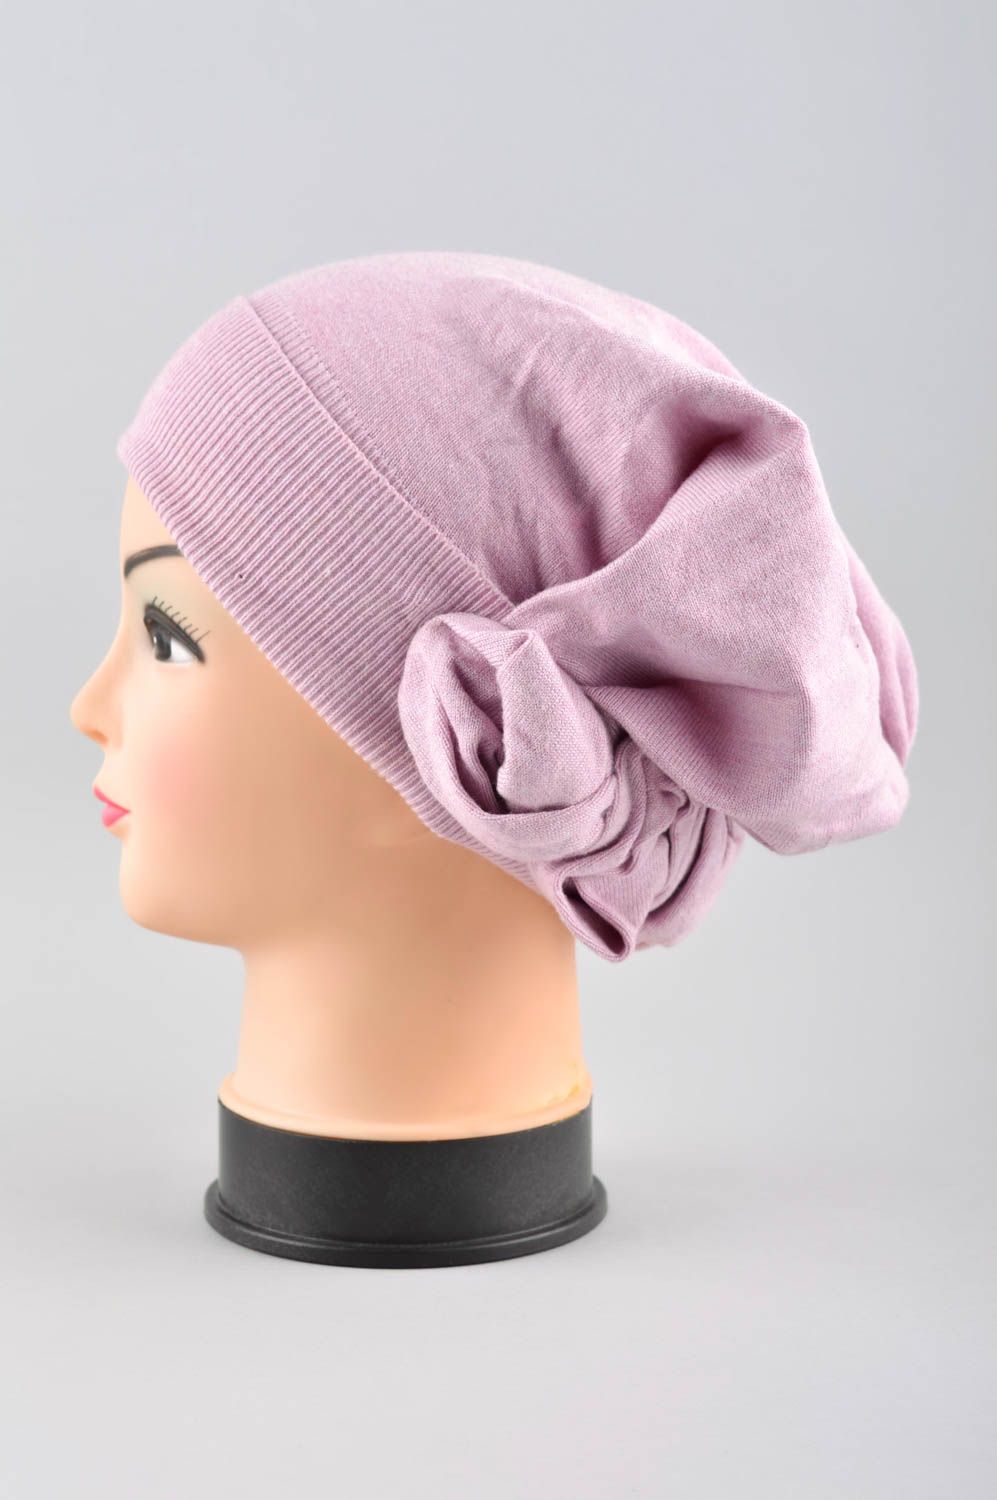 Зимняя женская шапка ручной работы зимняя шапка розовая головной убор красивый фото 2